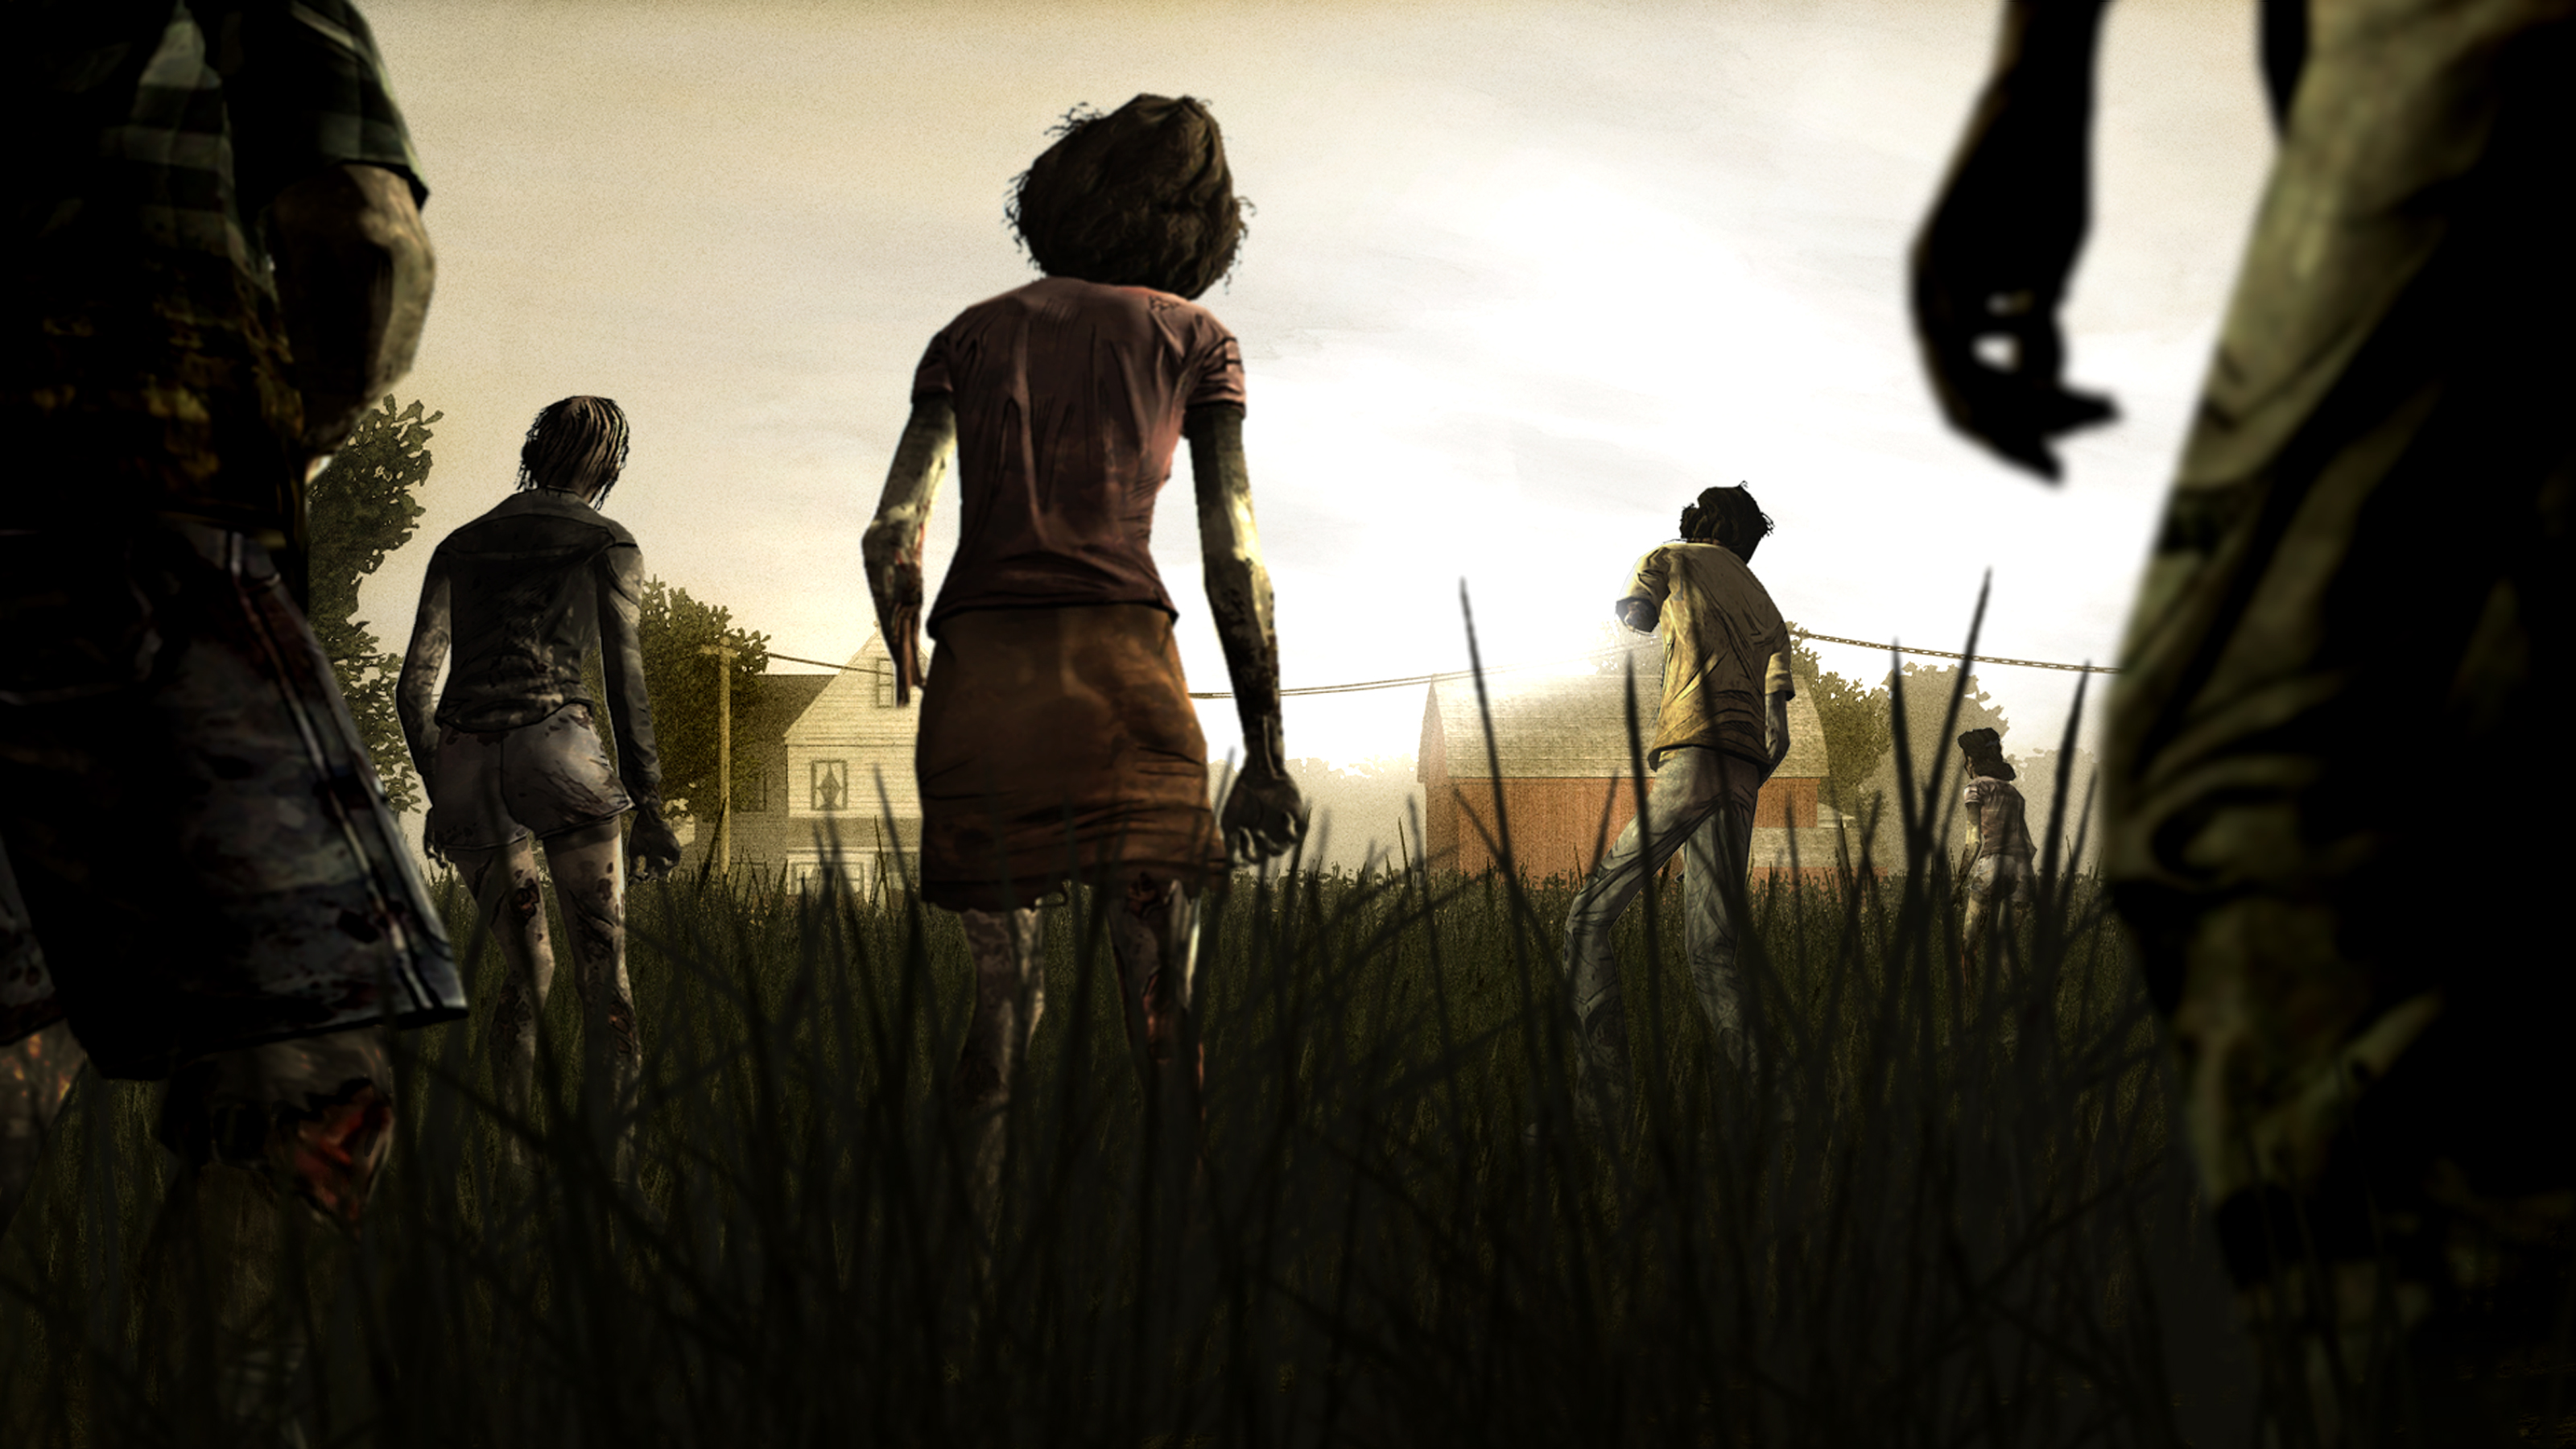 By Stephen Ments Off On Walking Dead HD Wallpaper